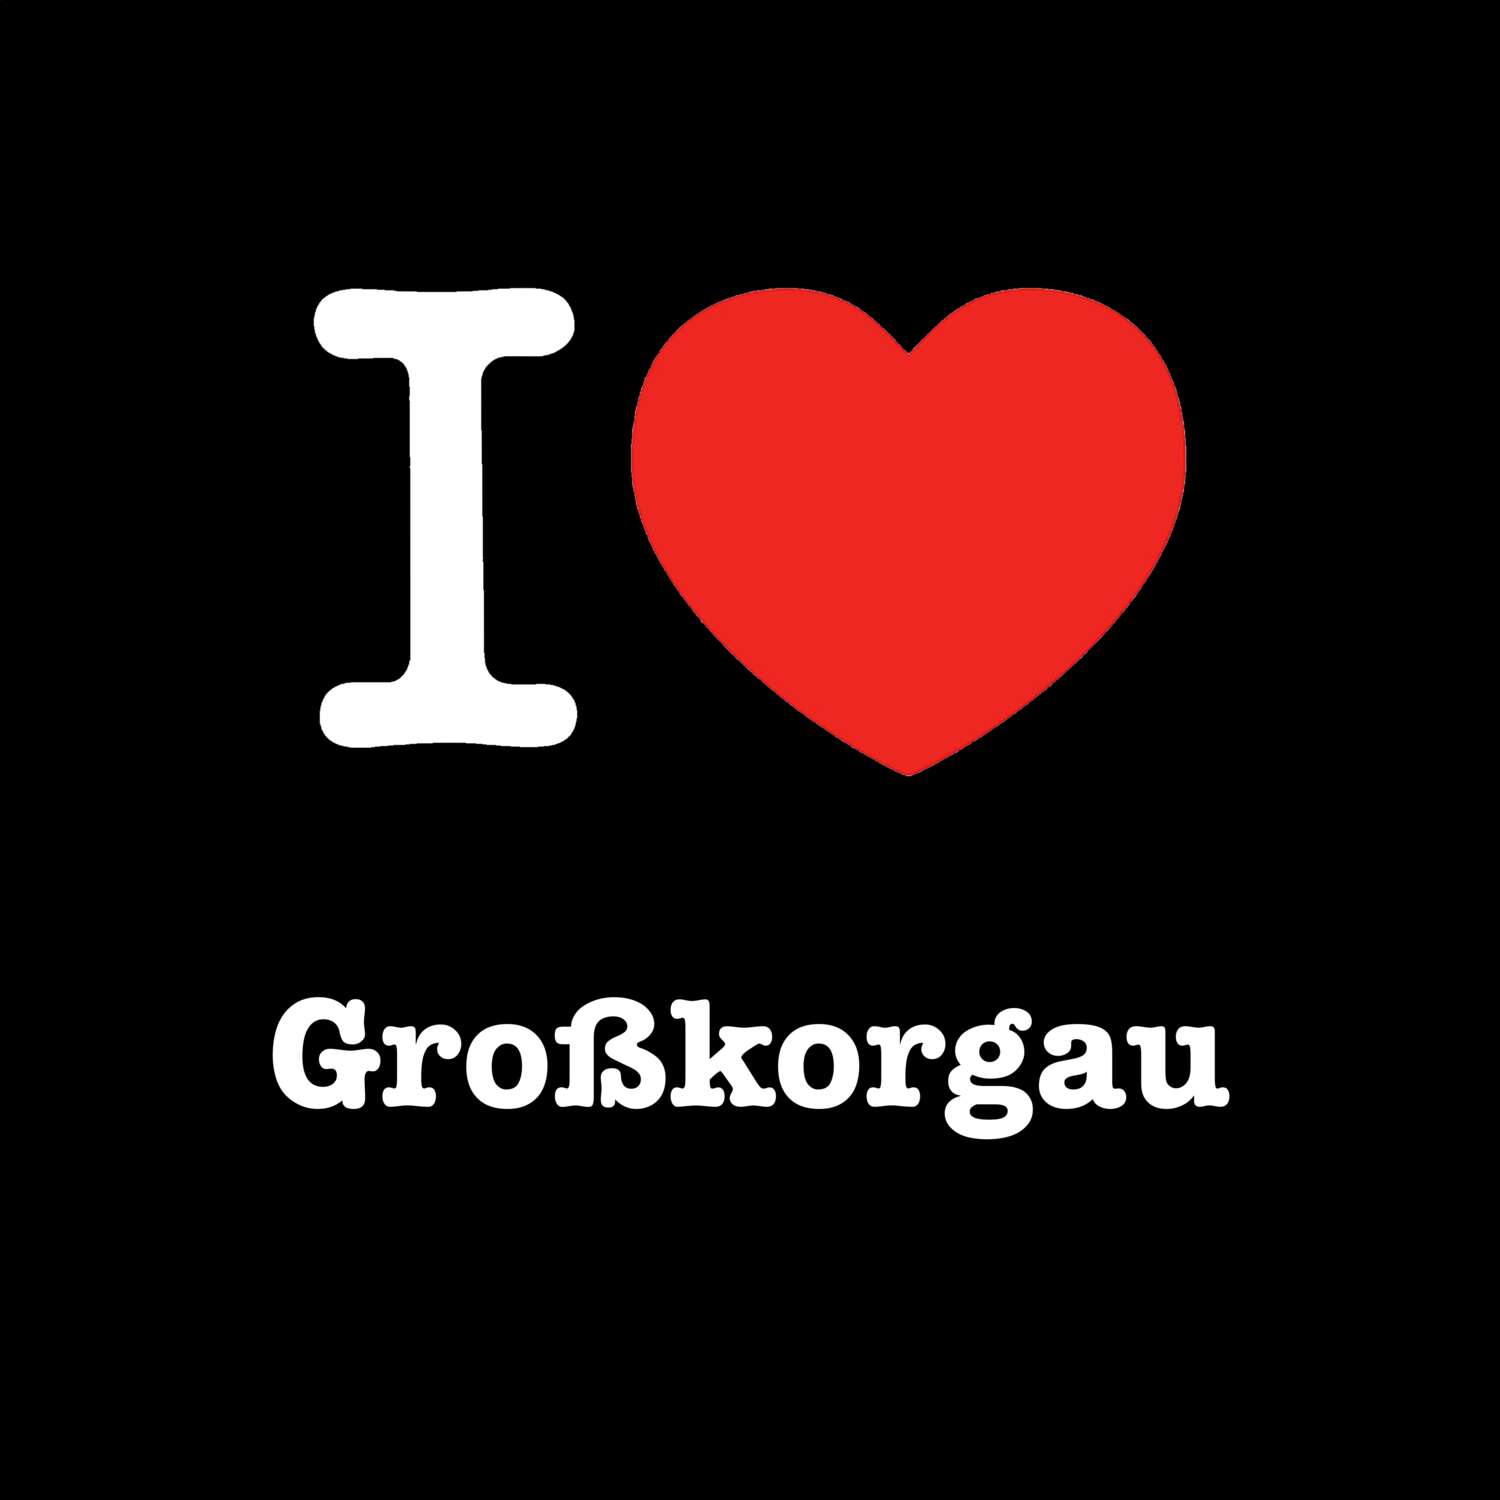 Großkorgau T-Shirt »I love«